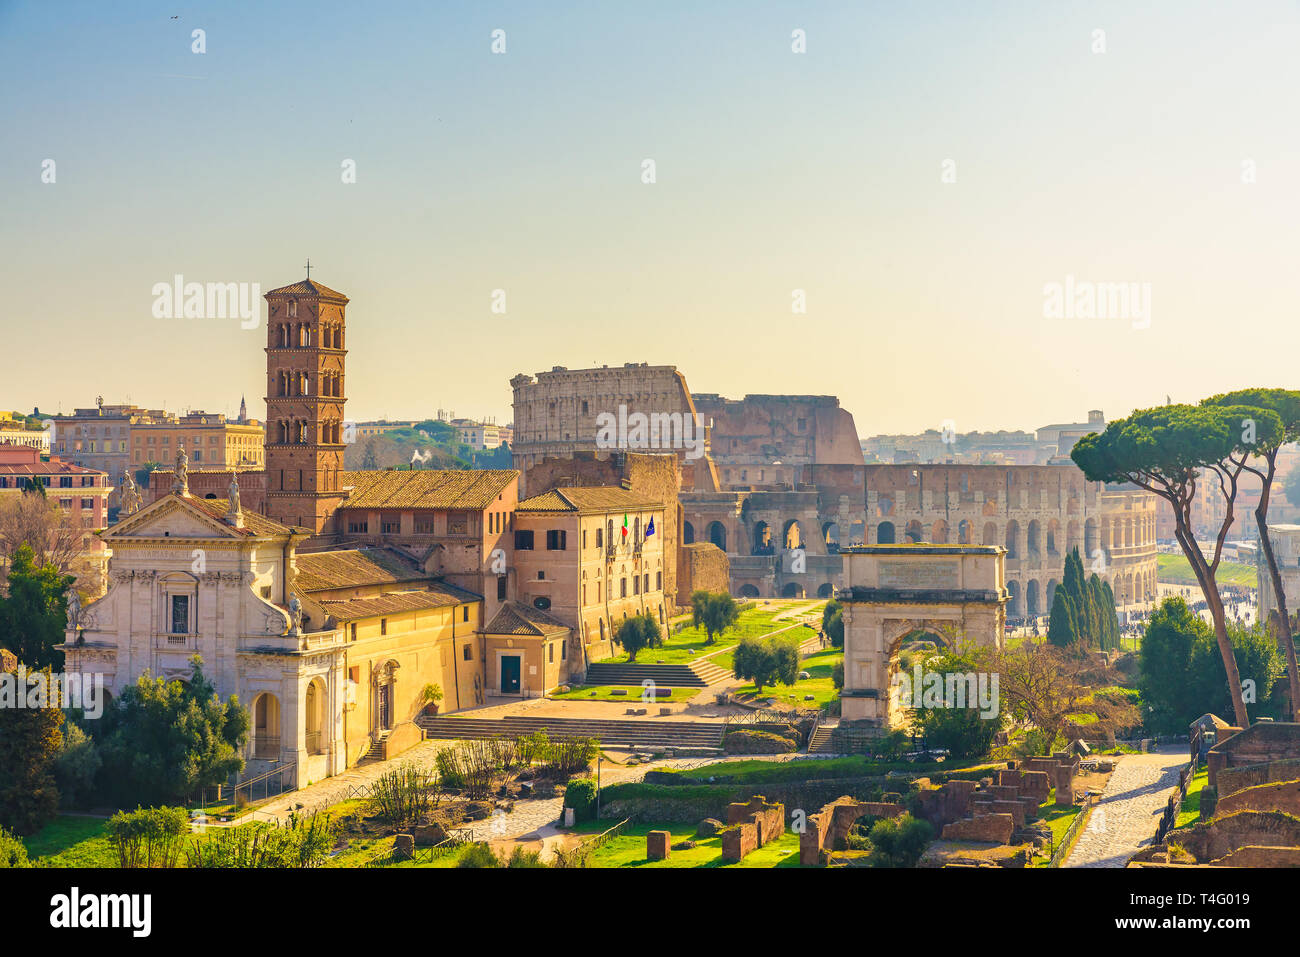 Rom, Italien die Skyline der Stadt mit Sehenswürdigkeiten Kolosseum und Forum Romanum Blick vom Palatin. berühmten Reiseziel in Italien Stockfoto